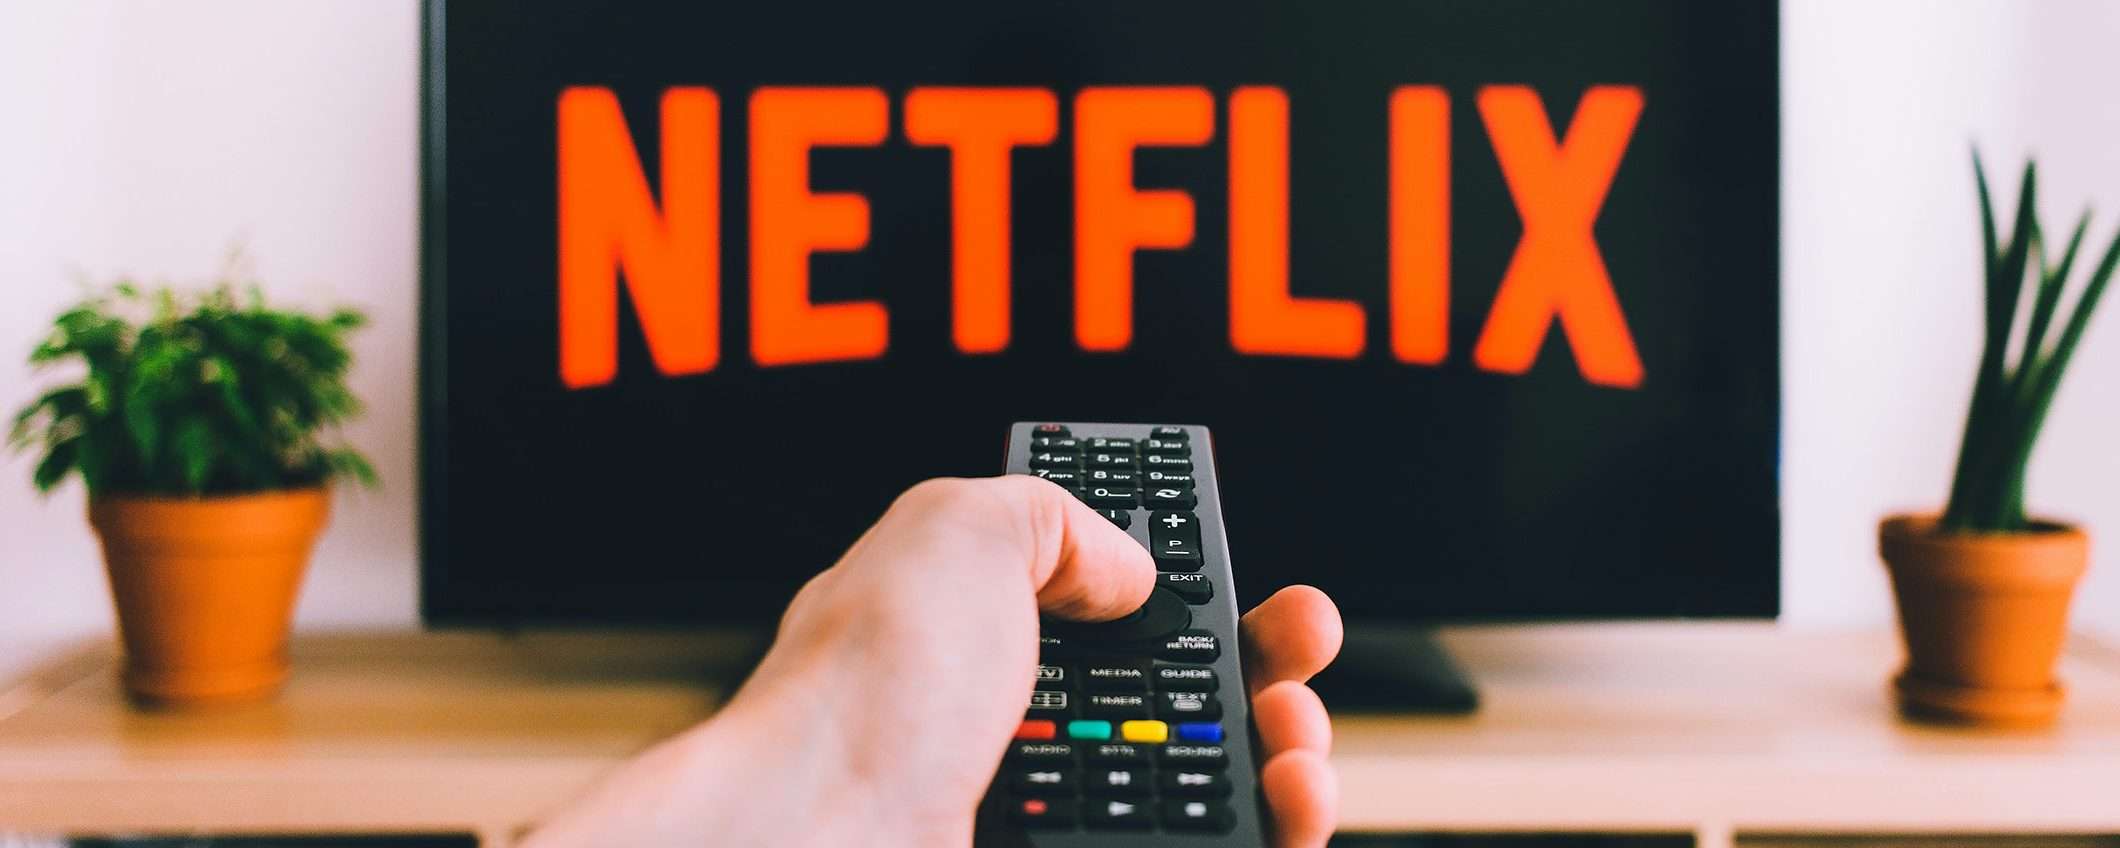 Netflix e VPN: cosa fare quando lo streaming non è accessibile?